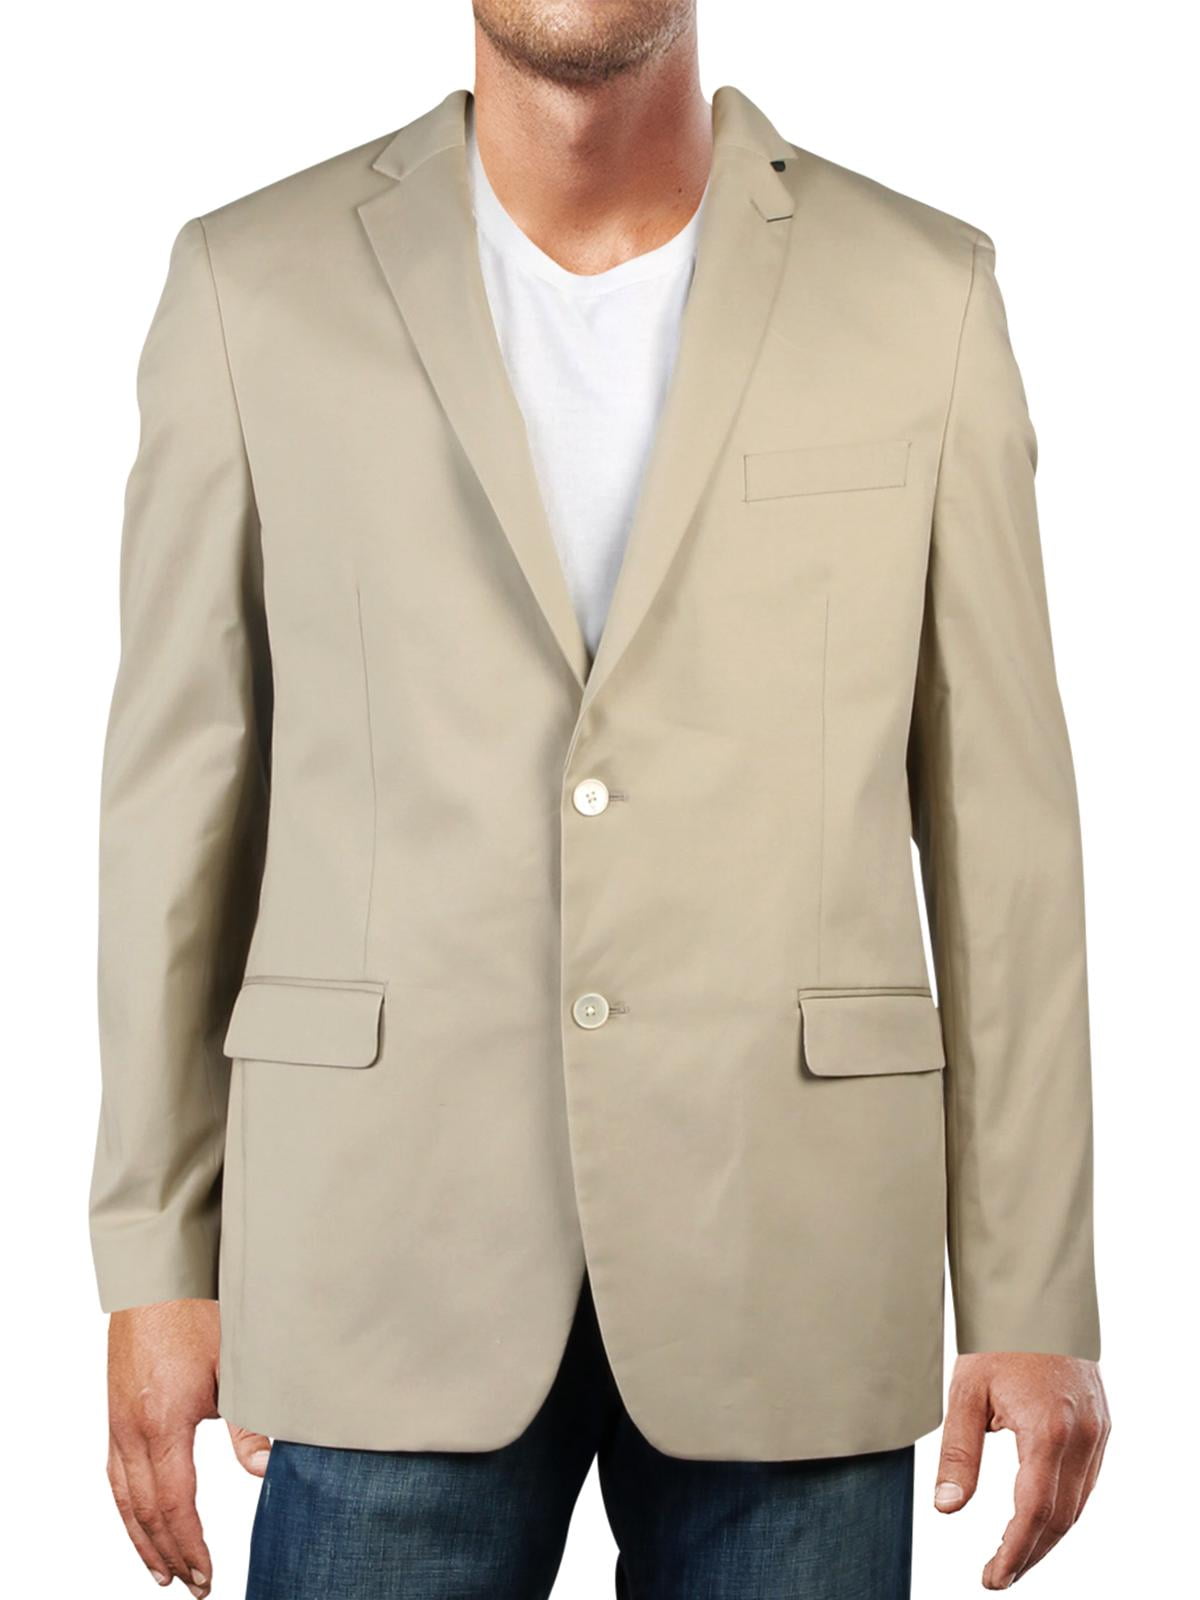 ralph lauren suit jacket